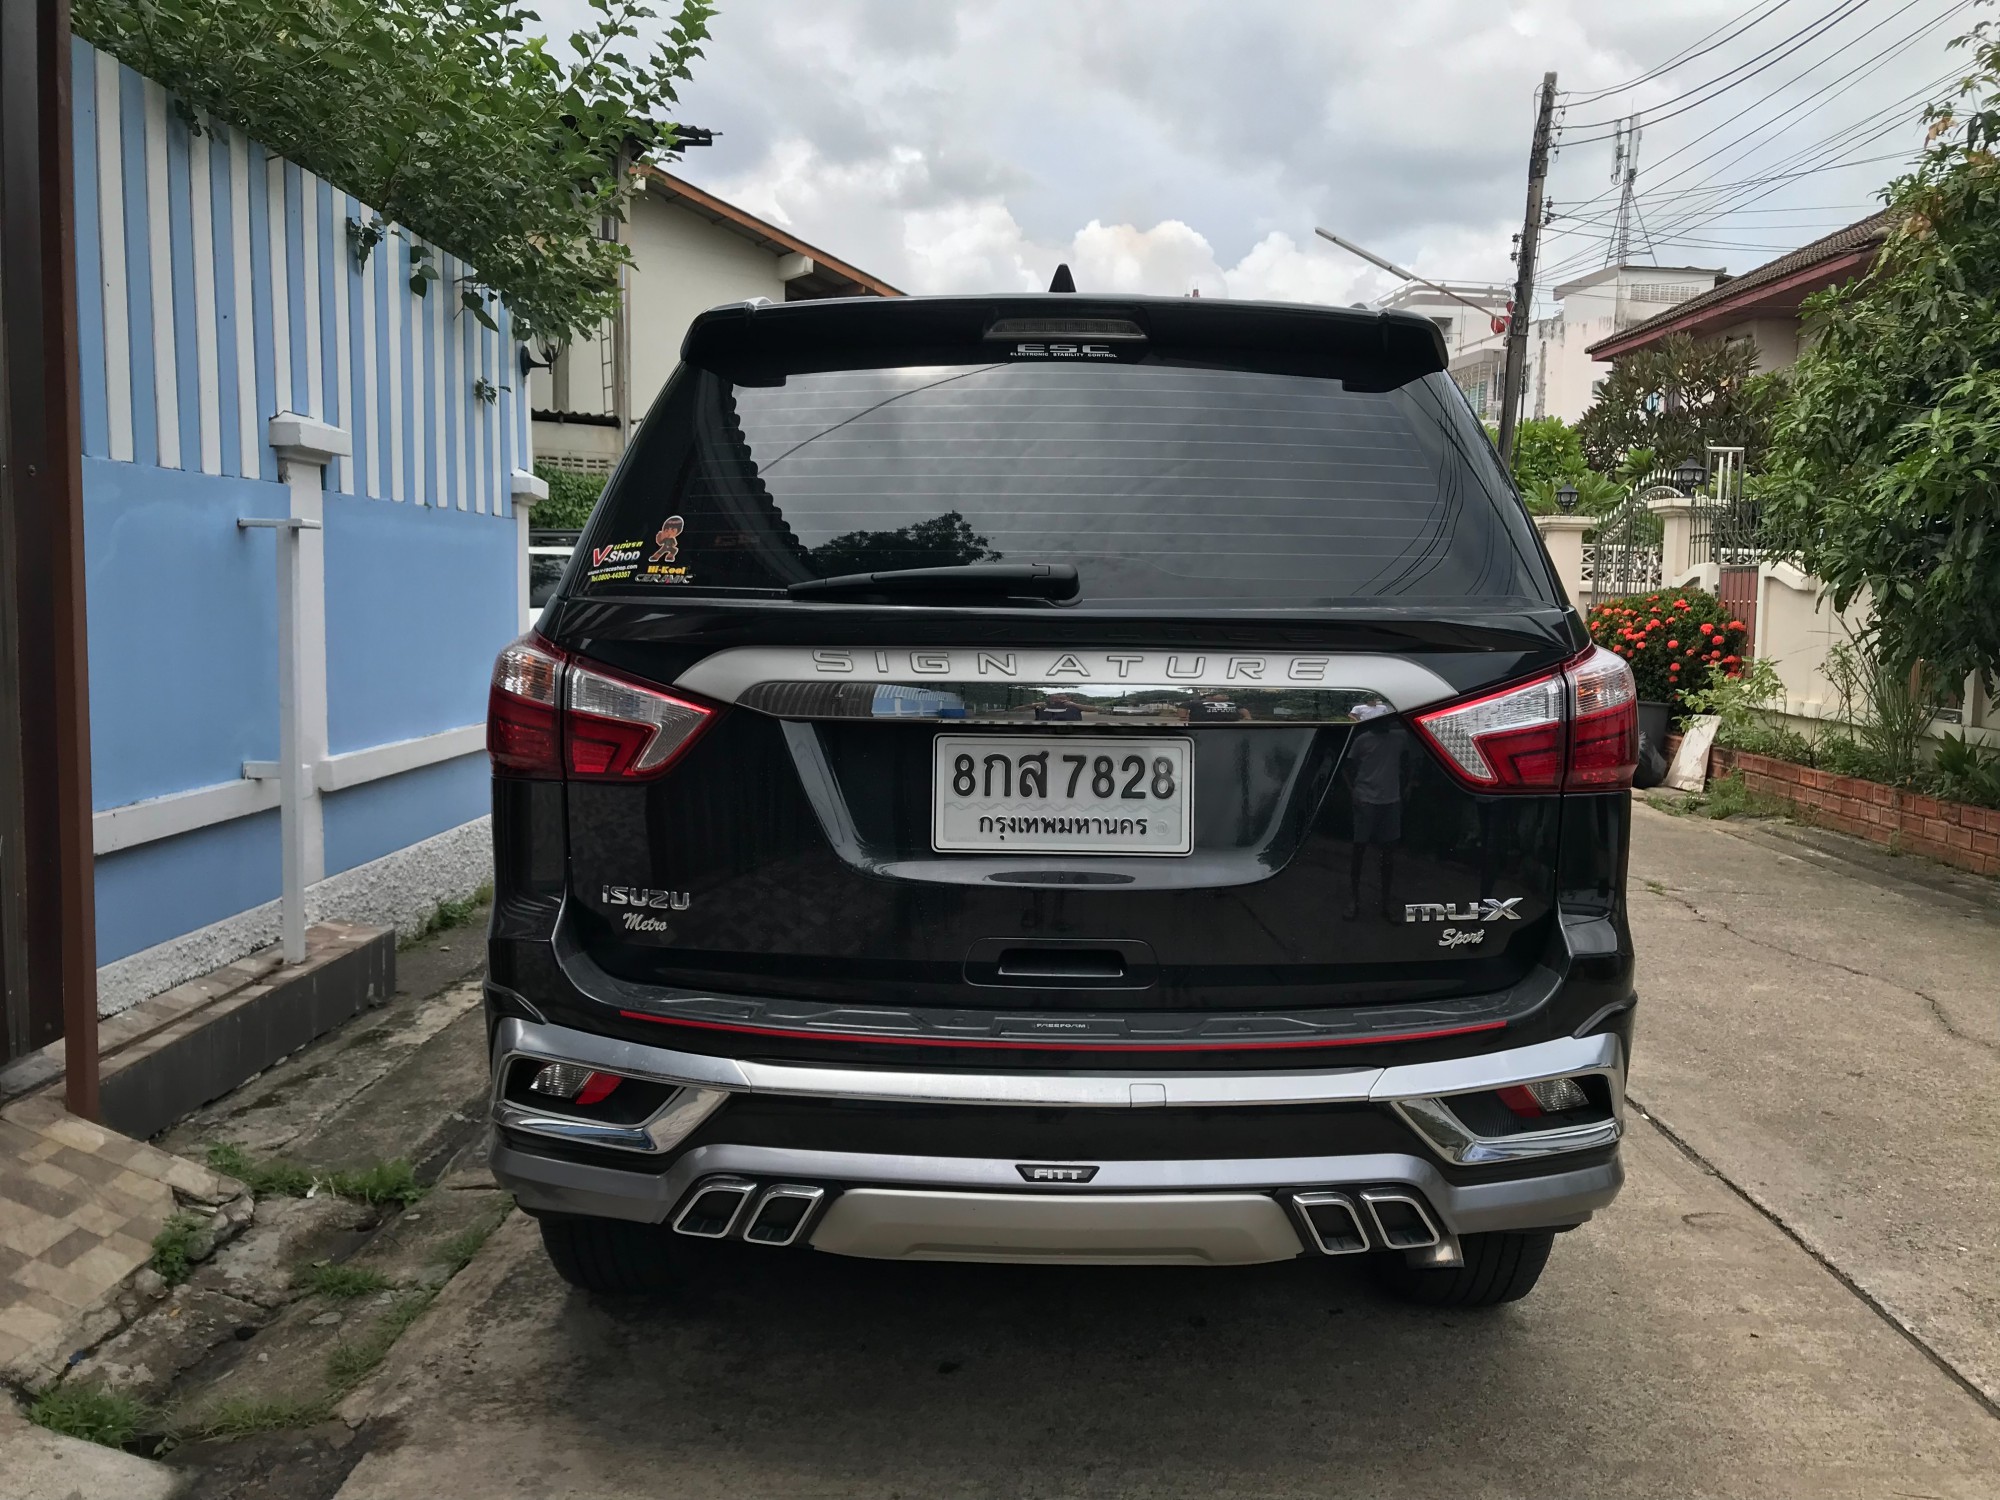 2019 iSUZU MU-X auto 3.0 dvd NA (75,000km)